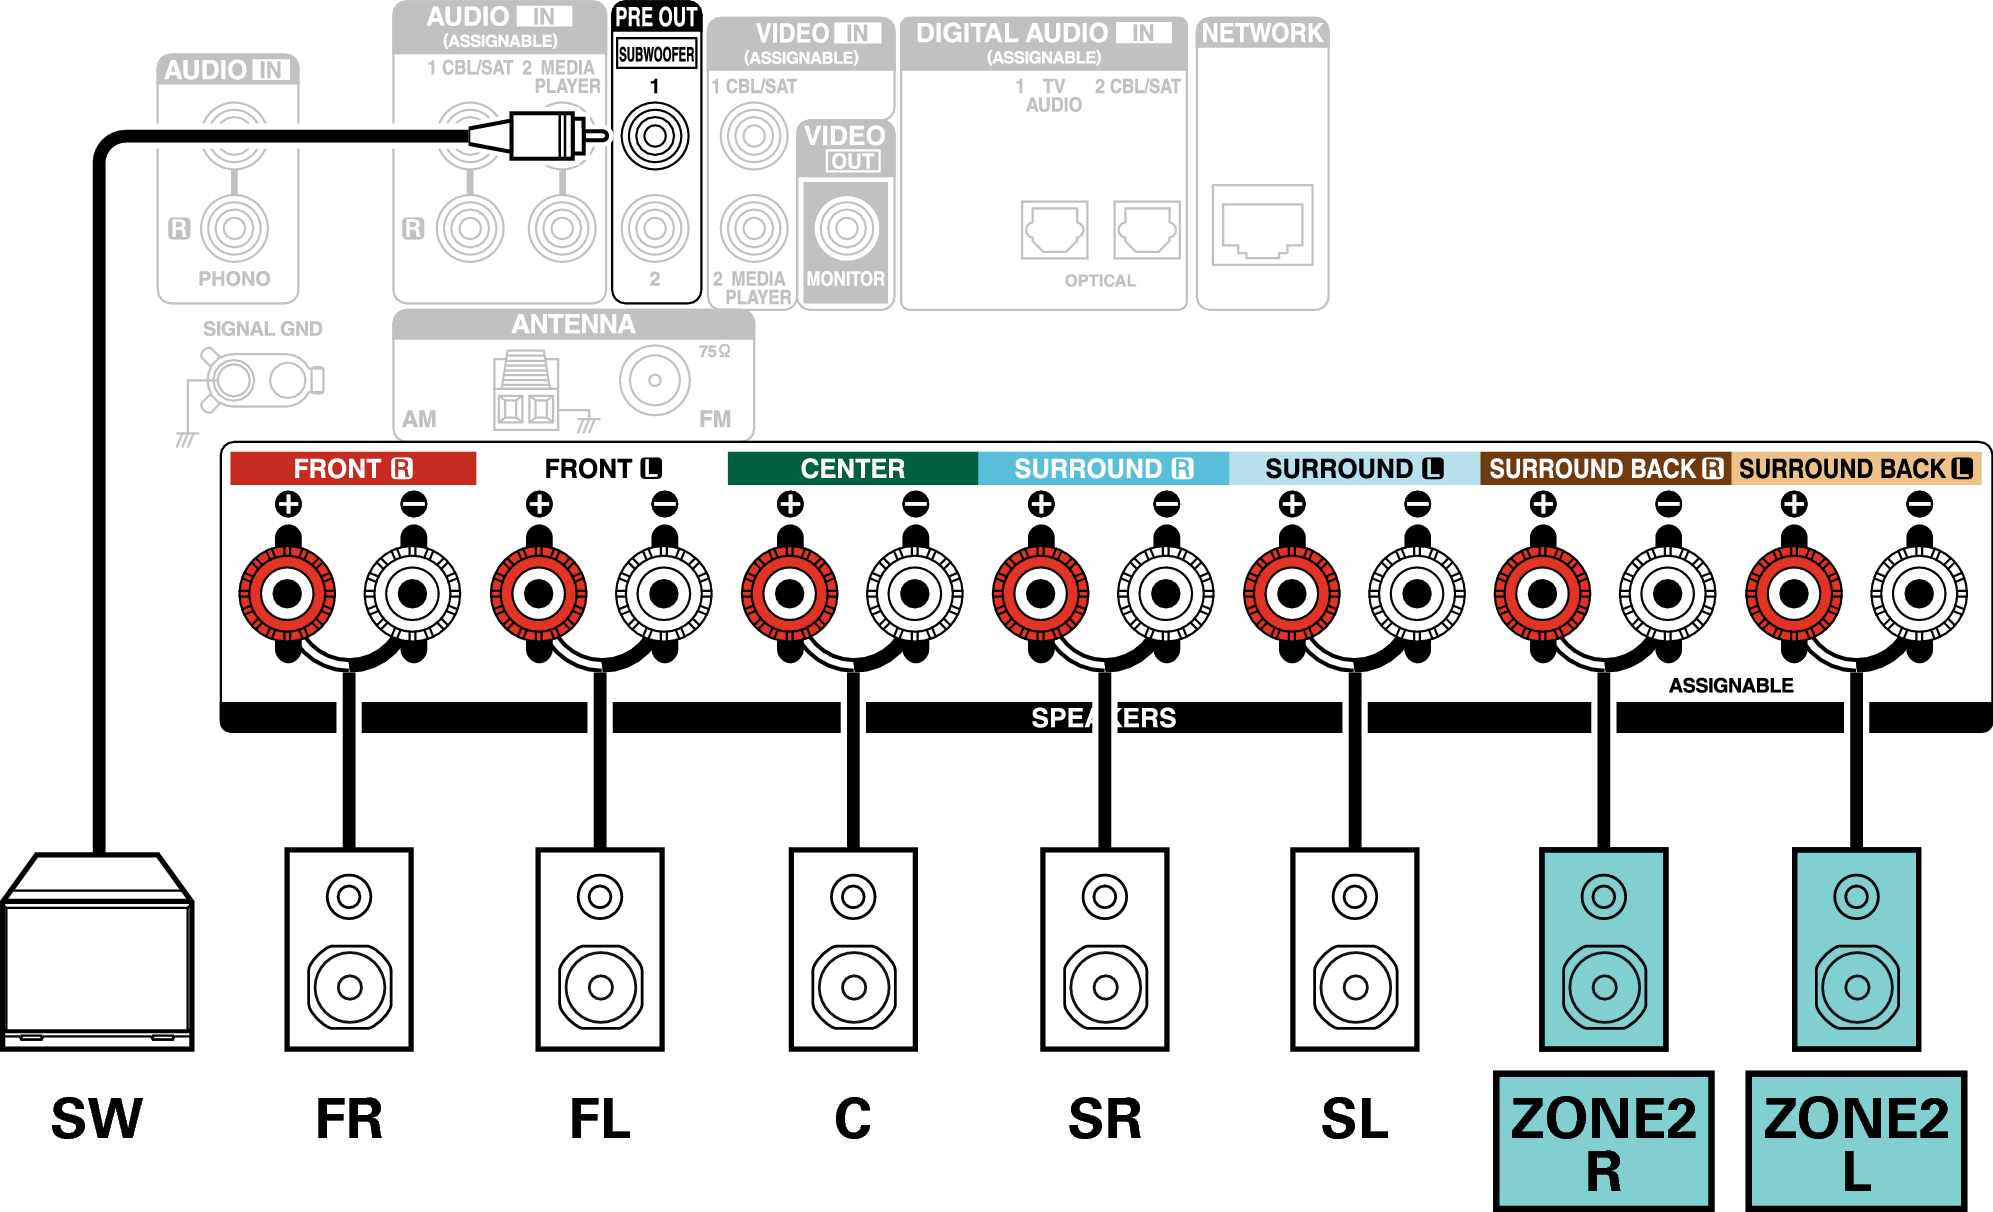 Conne SP 5.1 ZONE2 S75E2